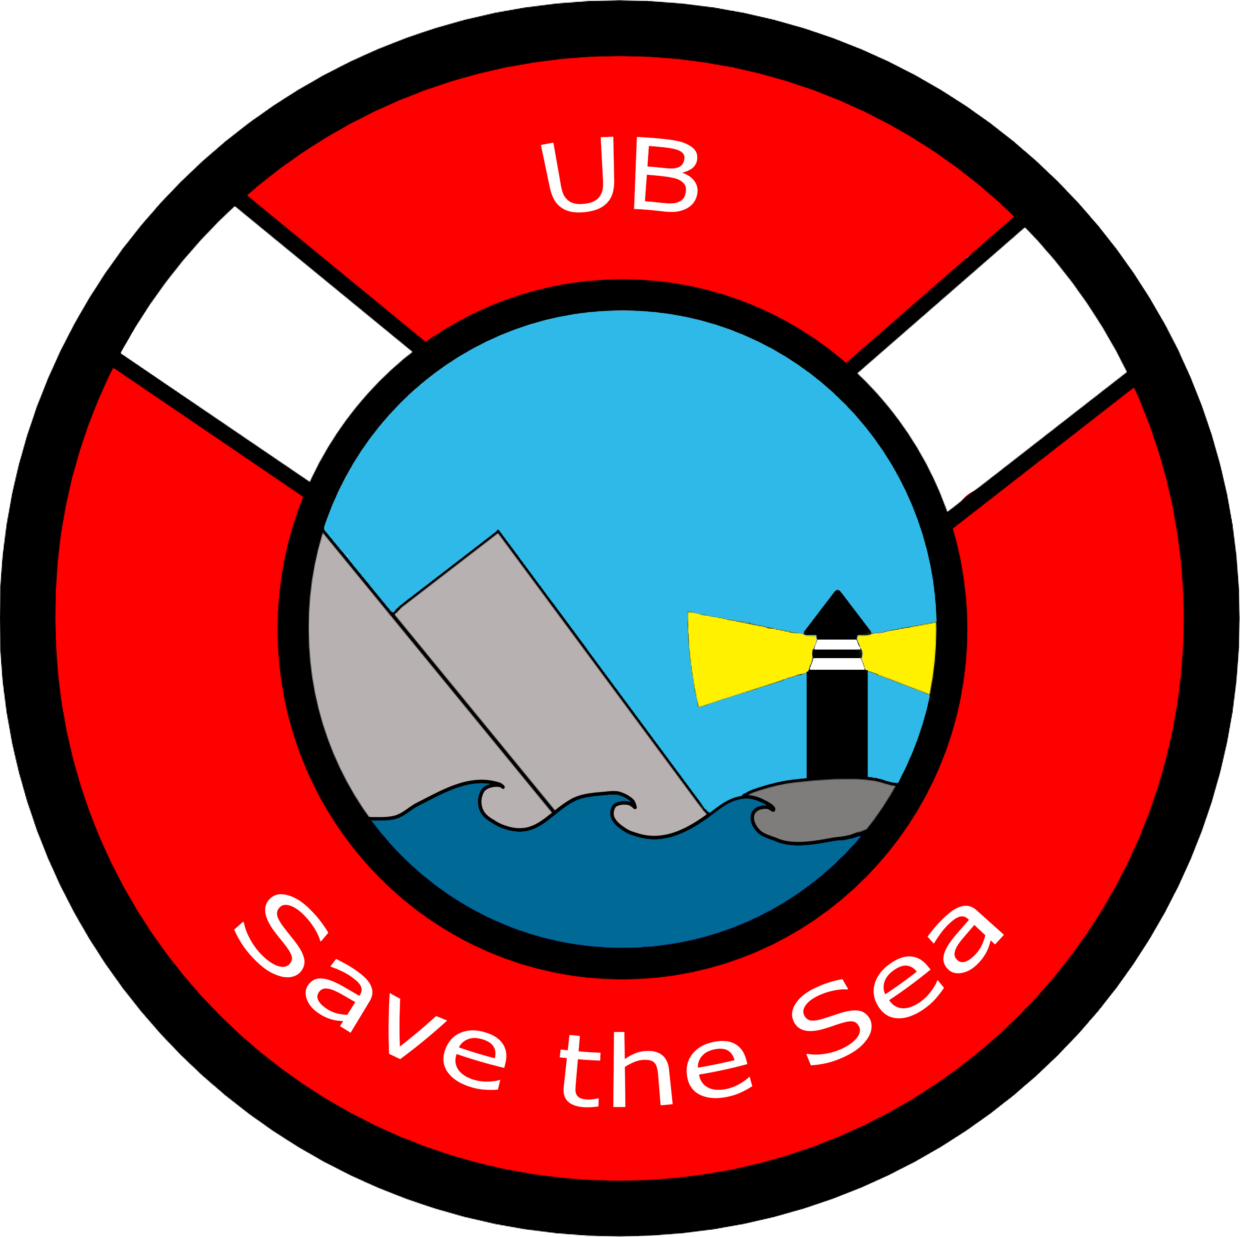 Savetheseaub logo